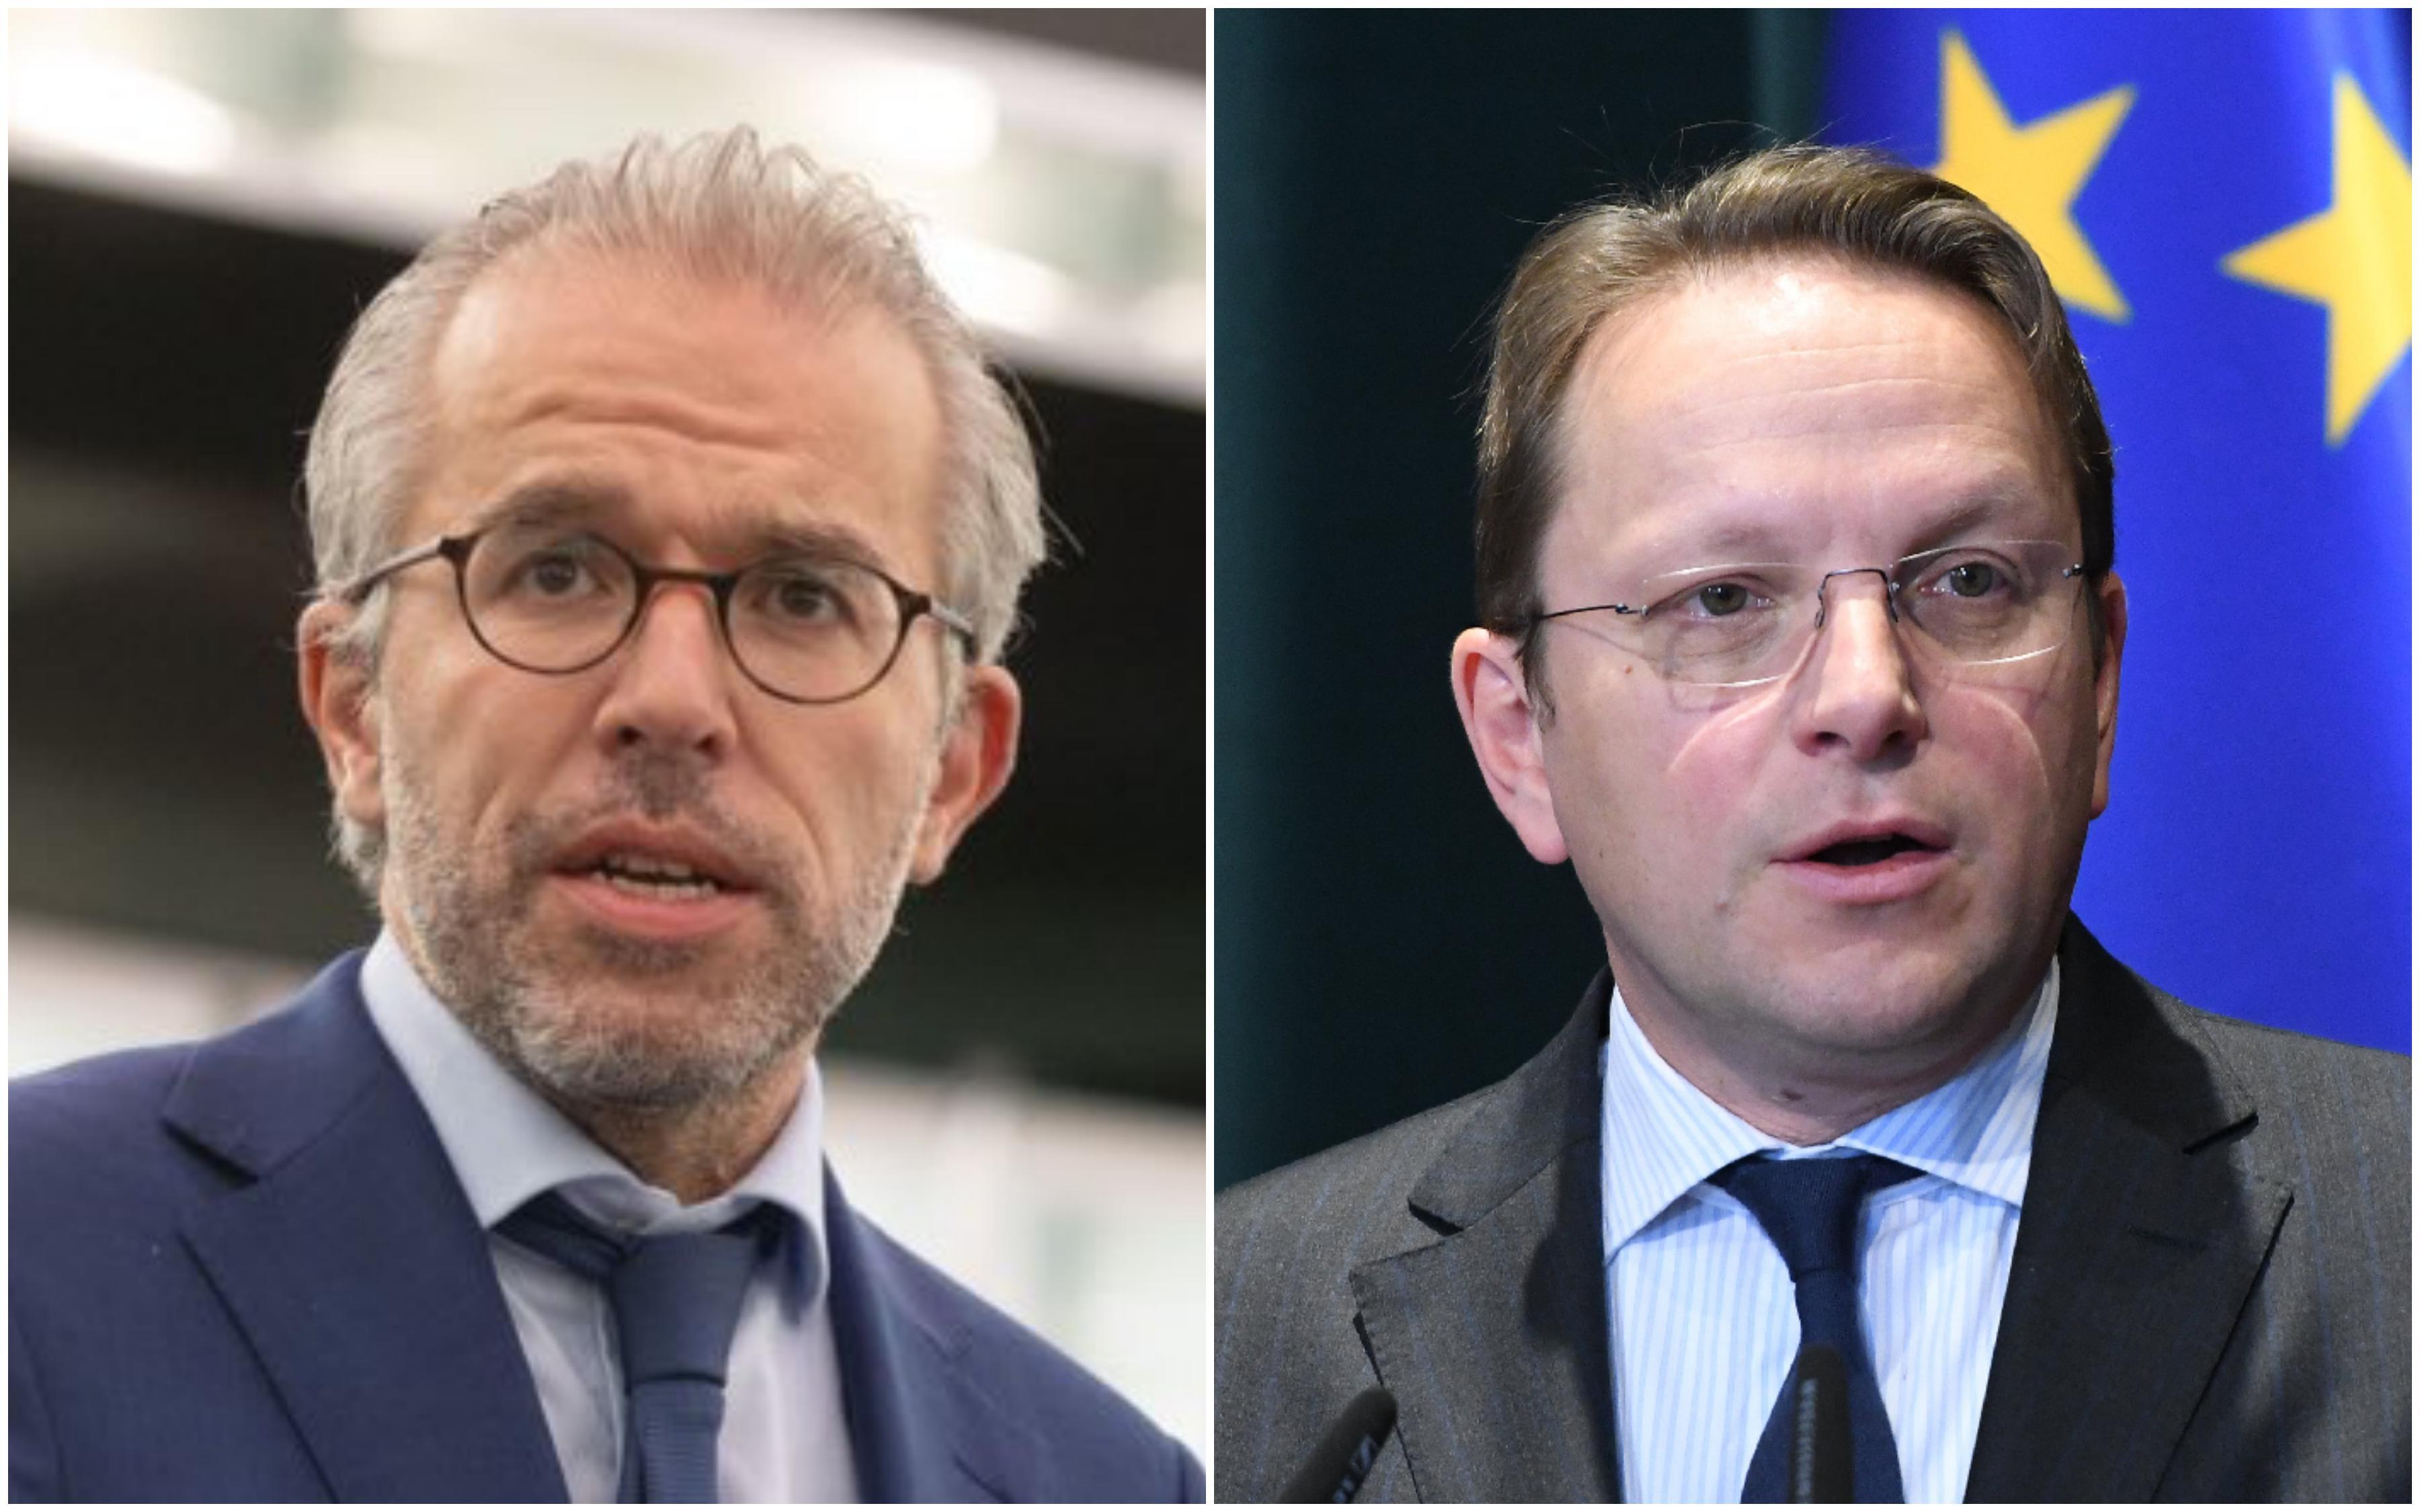 Nizozemski europarlamentarac kritikovao Varheljija: Ne može služiti drugim interesima osim EU i bosanskom narodu